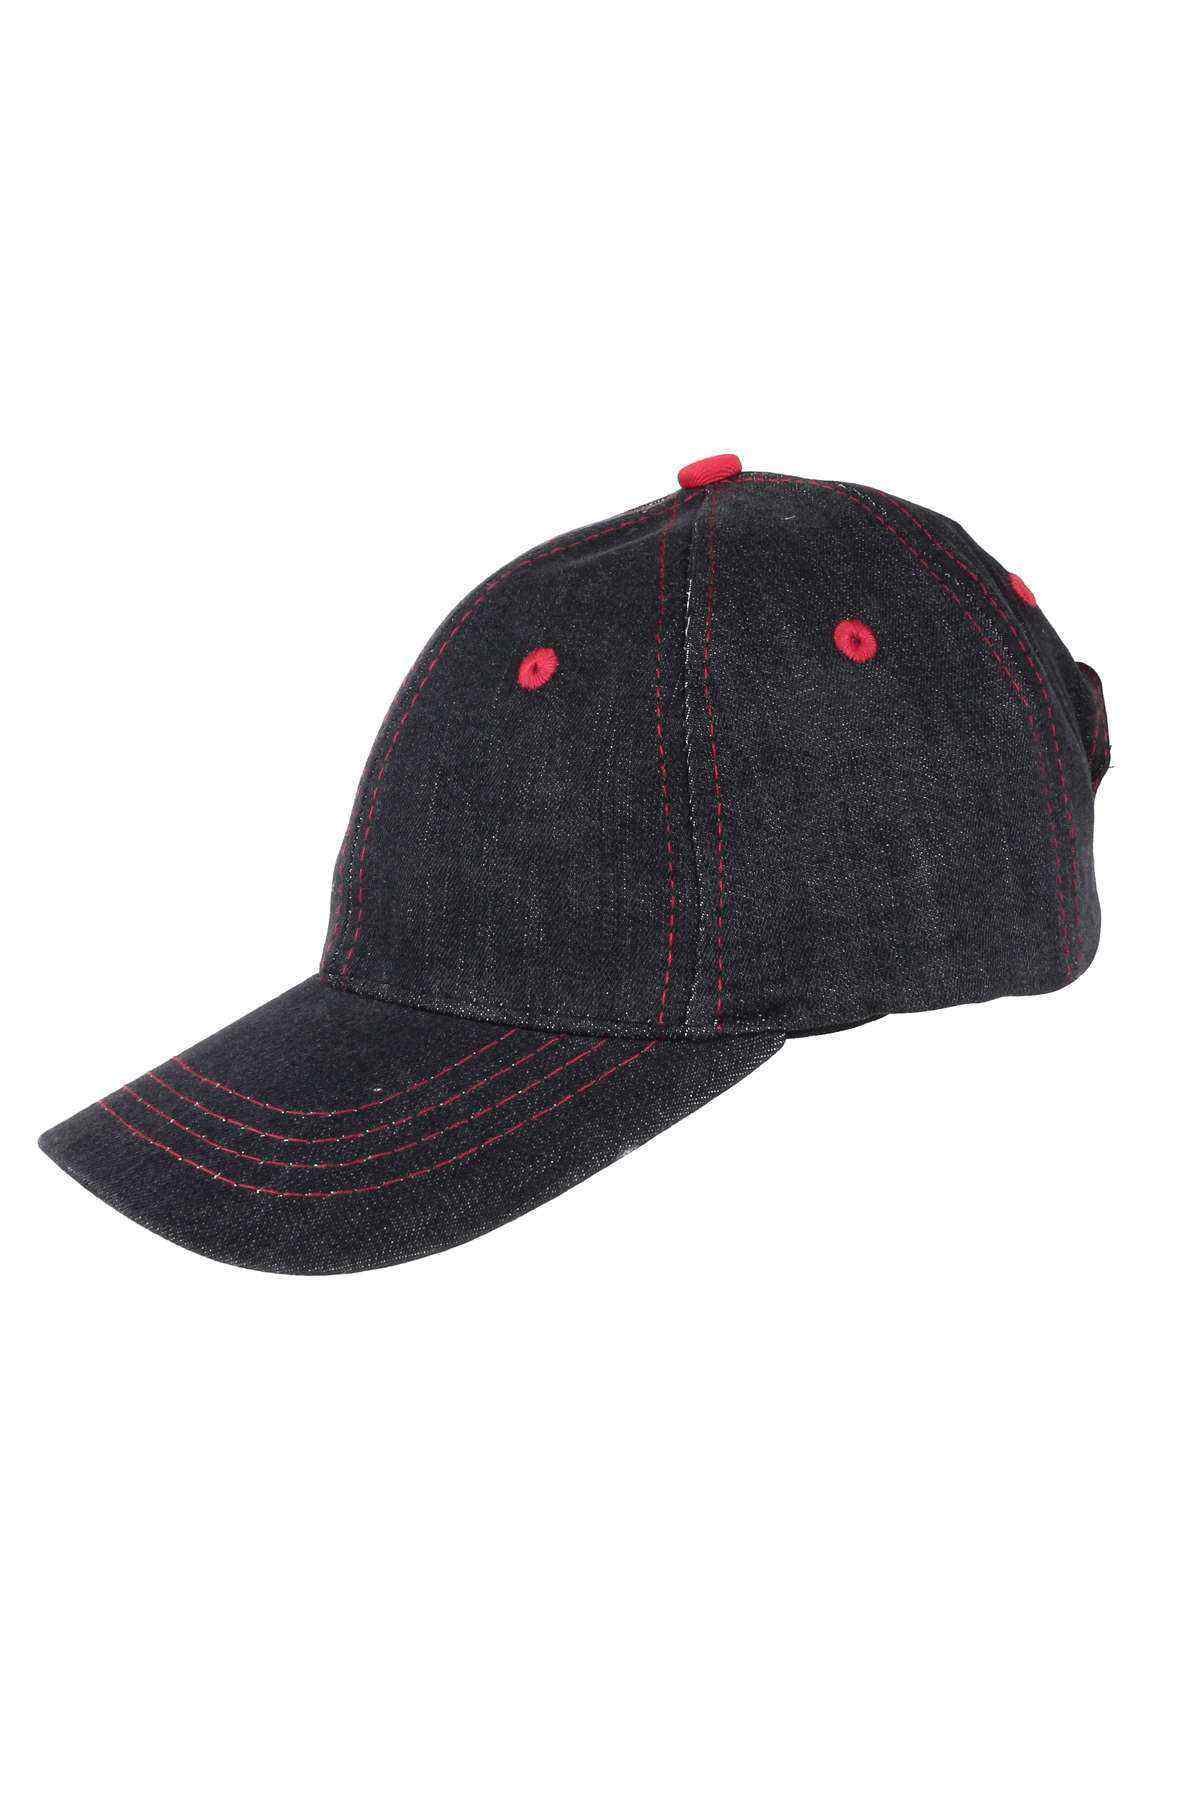 Erkek Çocuk Şapka Siyah-Kırmızı 8-12 Yaş